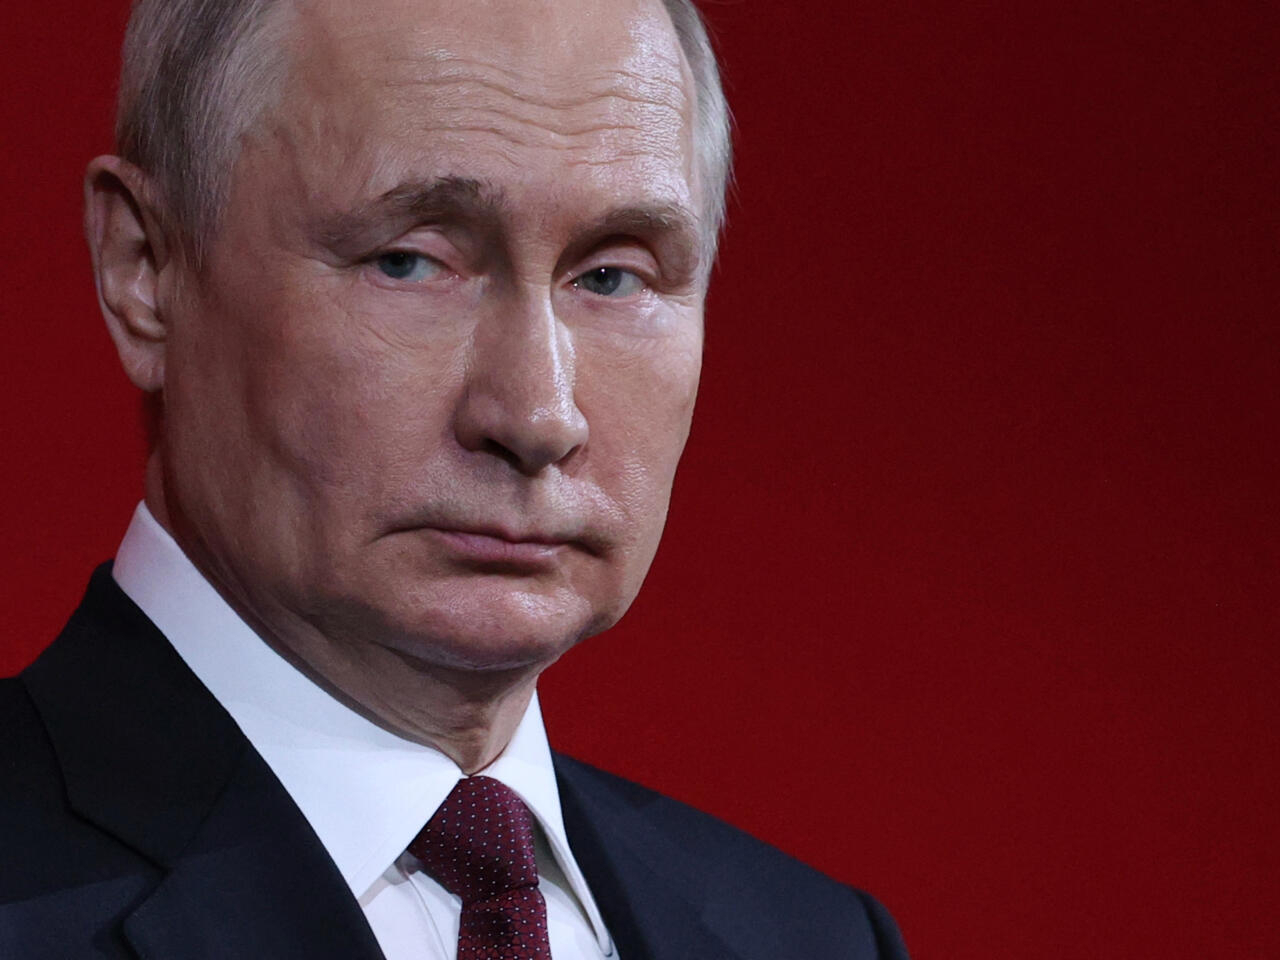 ¿Hasta dónde llega el “brazo” de Putin? Sus críticos y detractores parecen no estar seguros ni en el extranjero